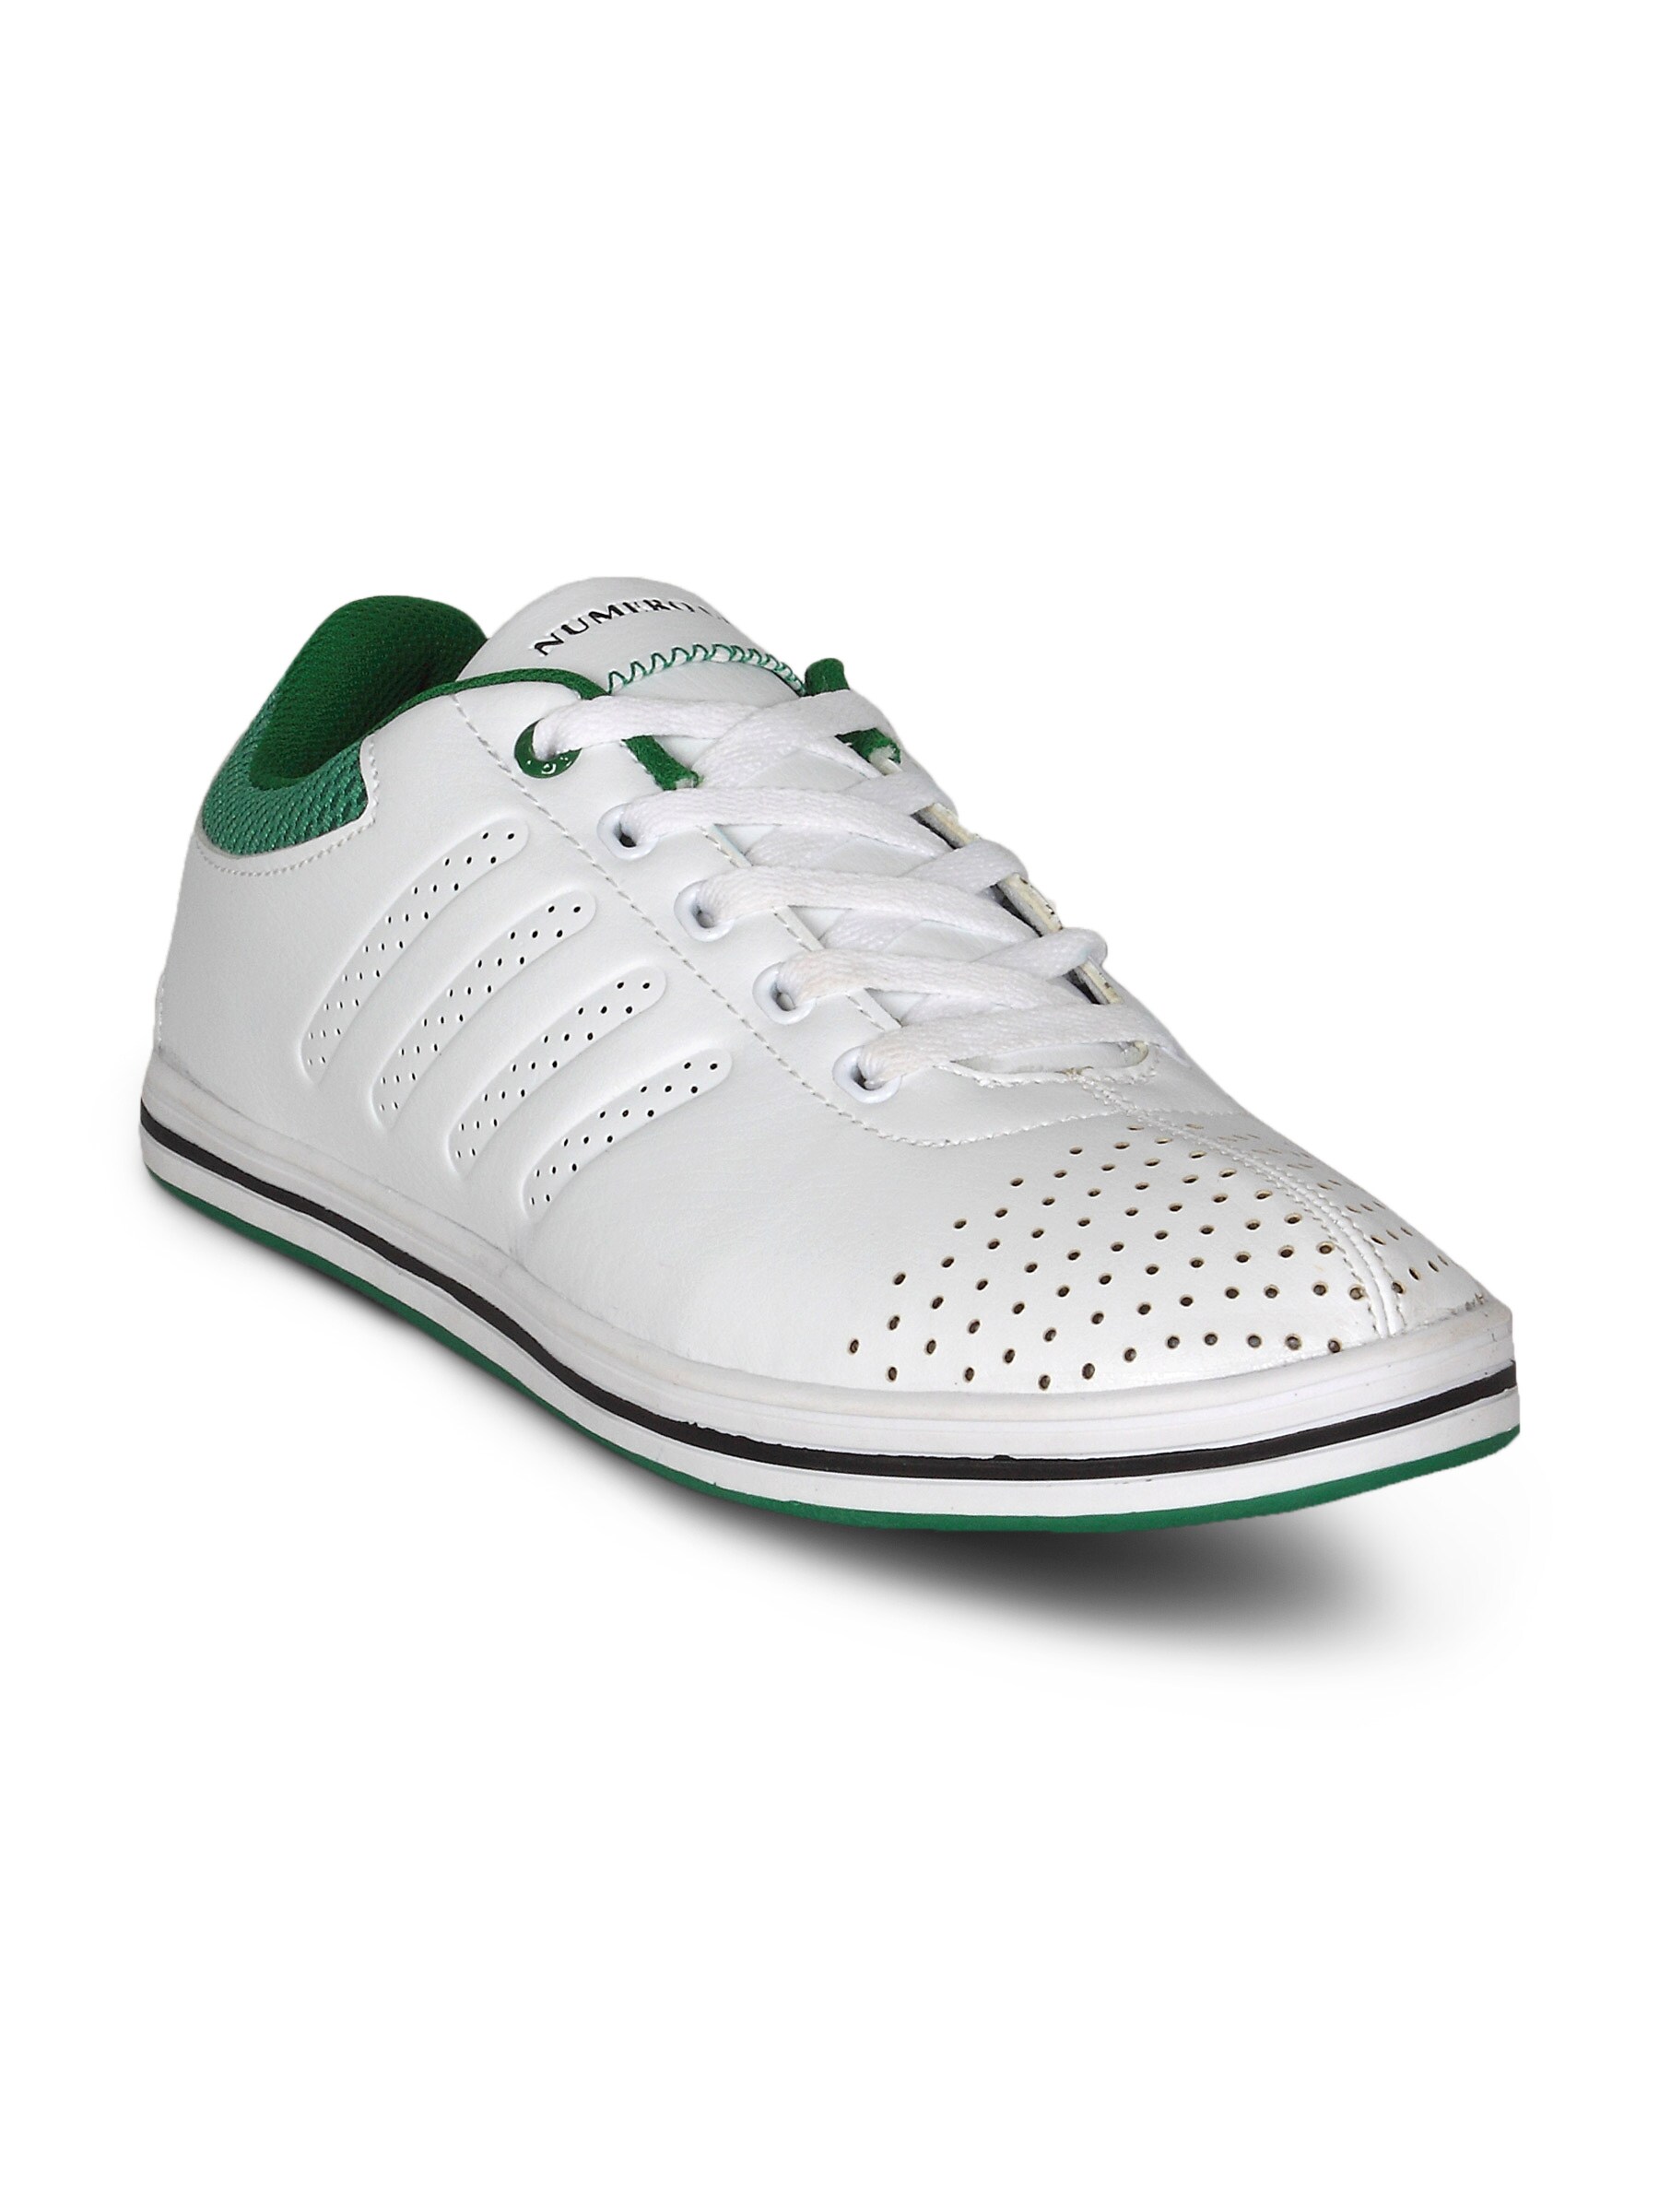 Numero Uno Men's White Green Casual Shoe